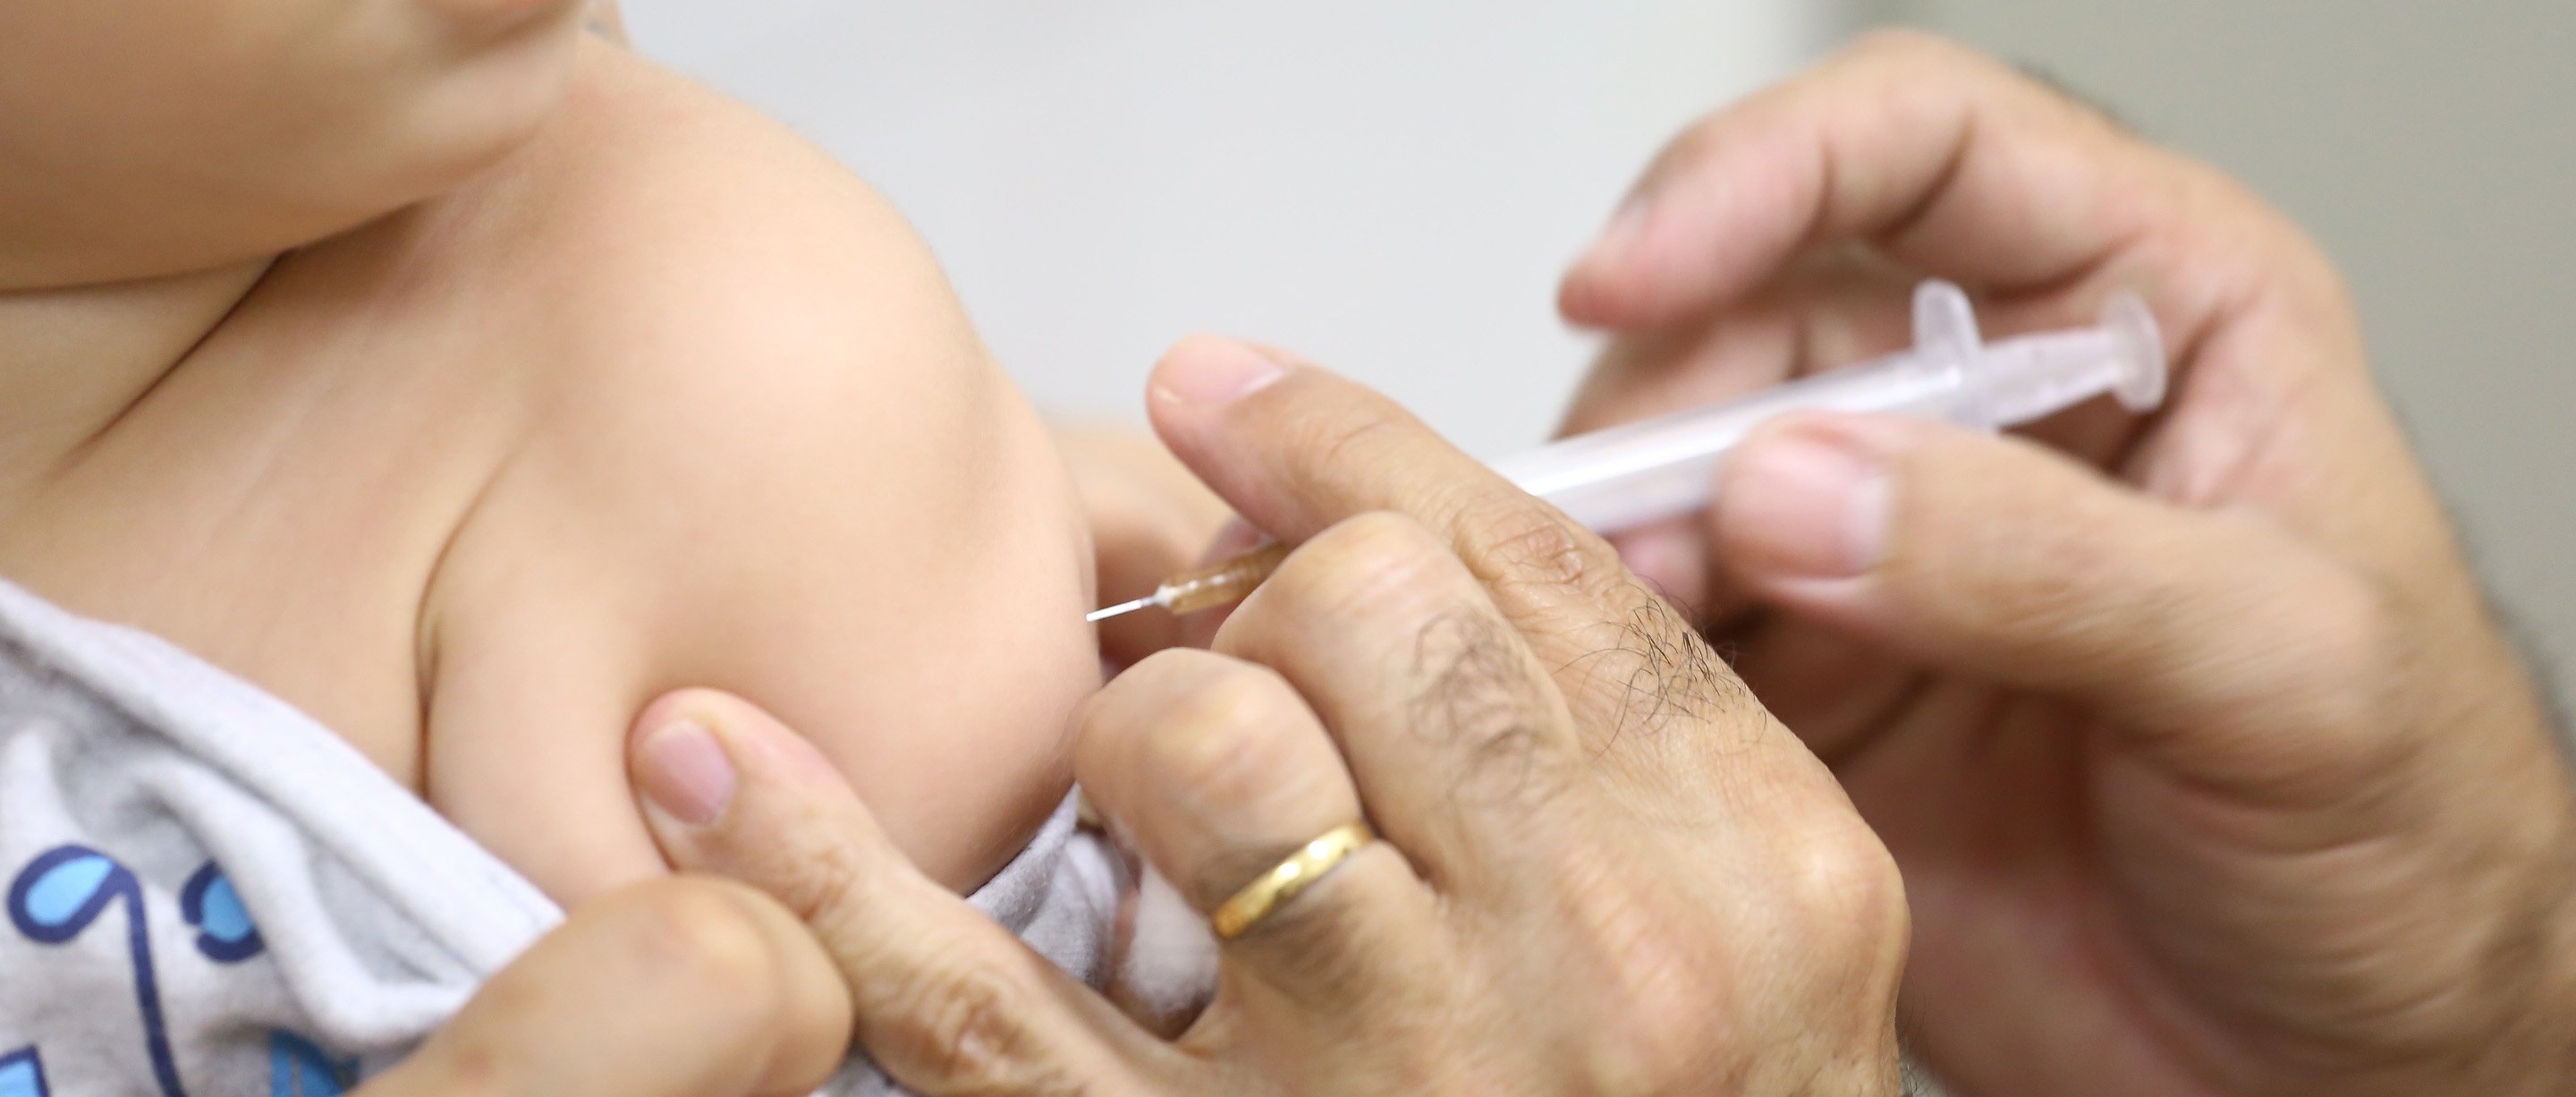 Sarampo e pólio: 12 estados têm vacinação abaixo da média nacional